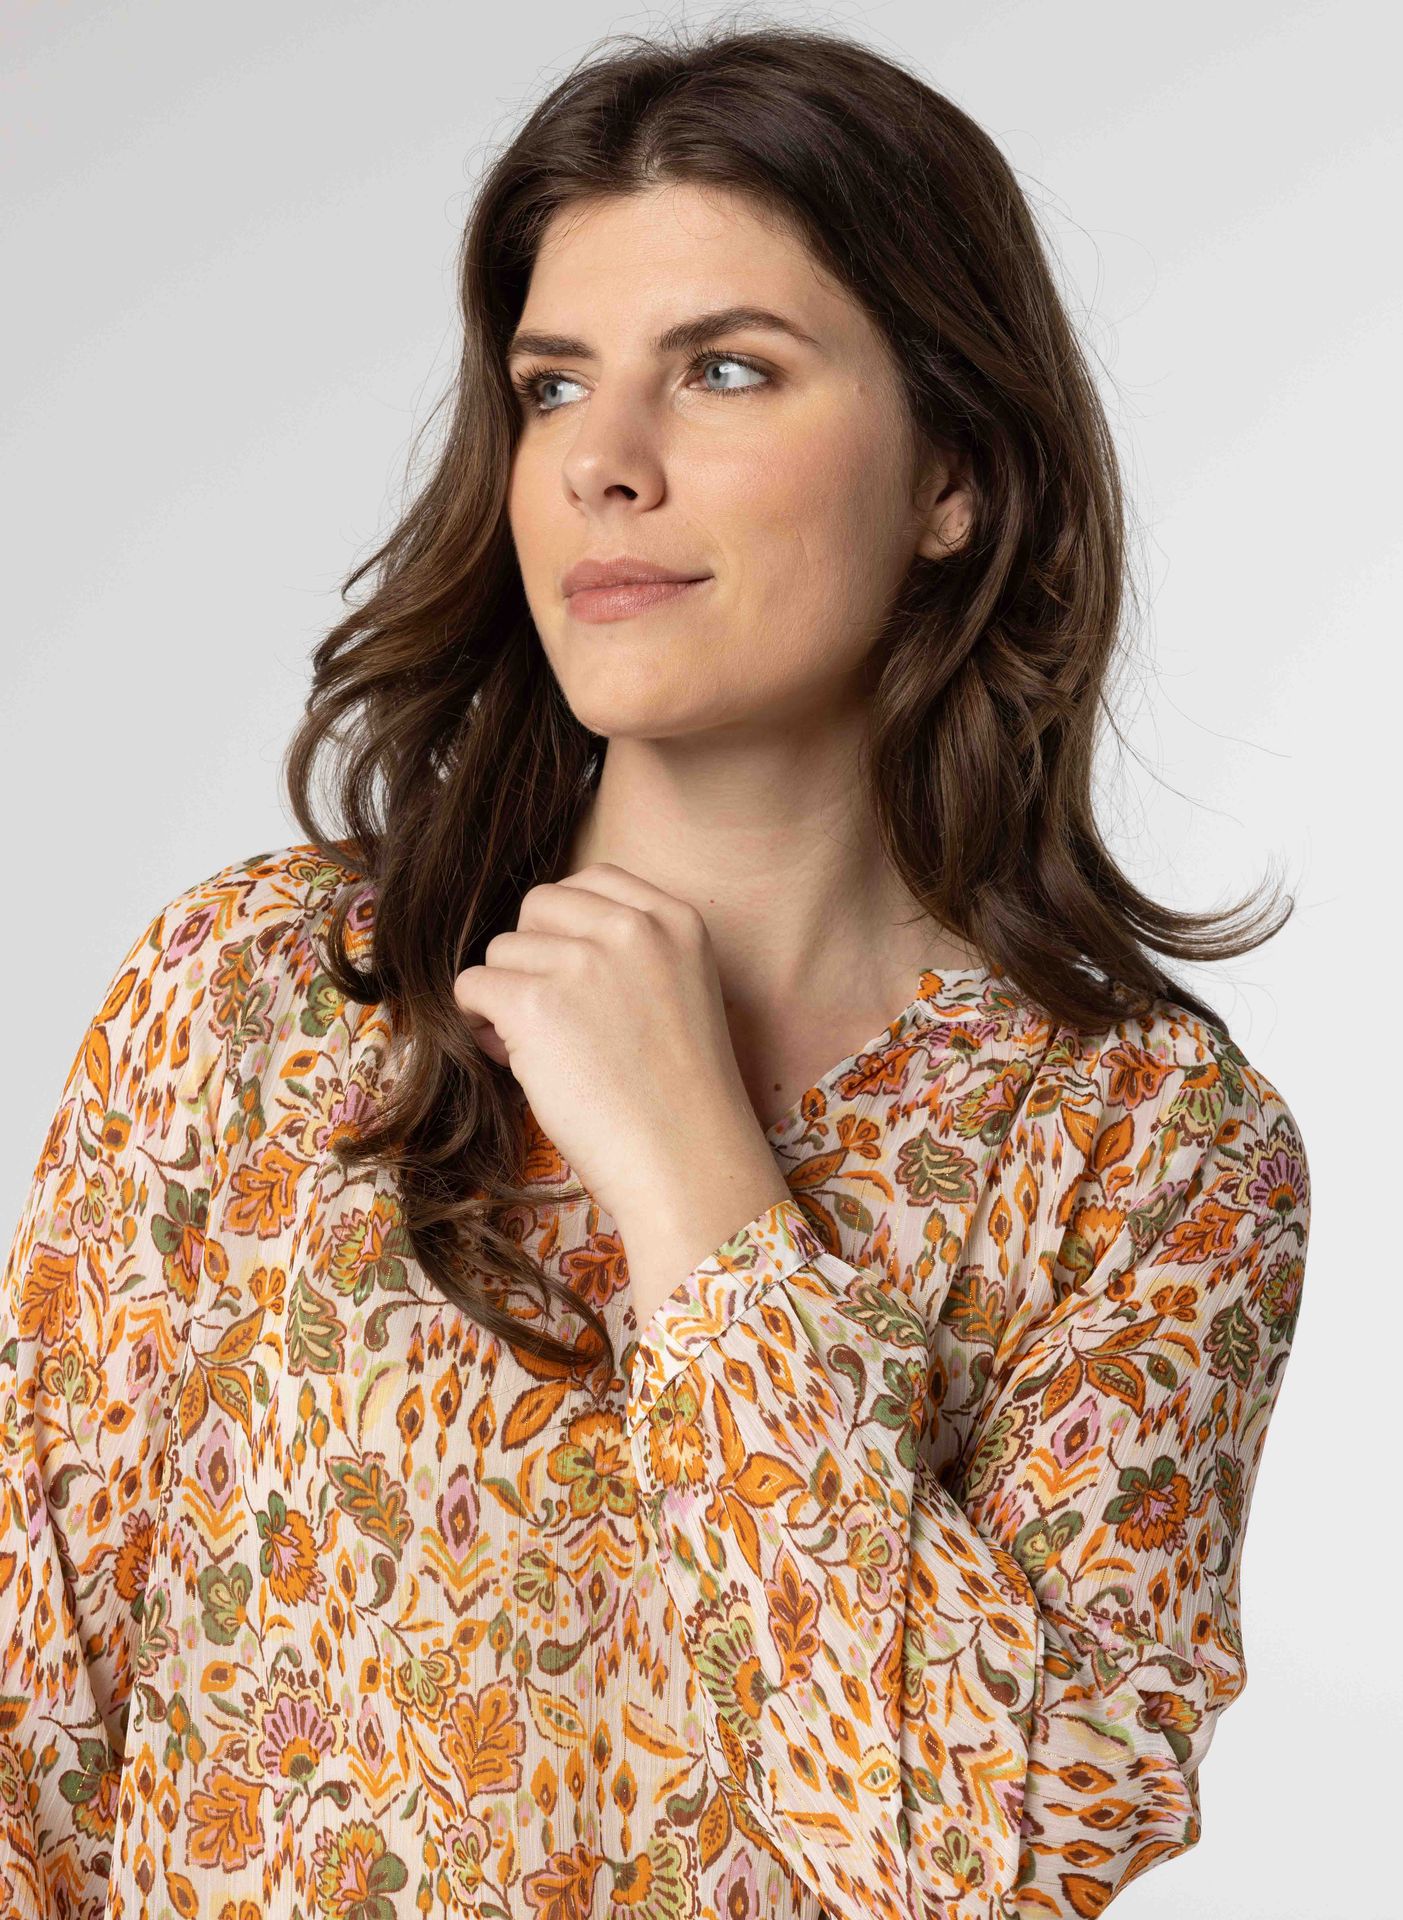 Norah Meerkleurige blouse met glitter ecru multicolor 214168-122